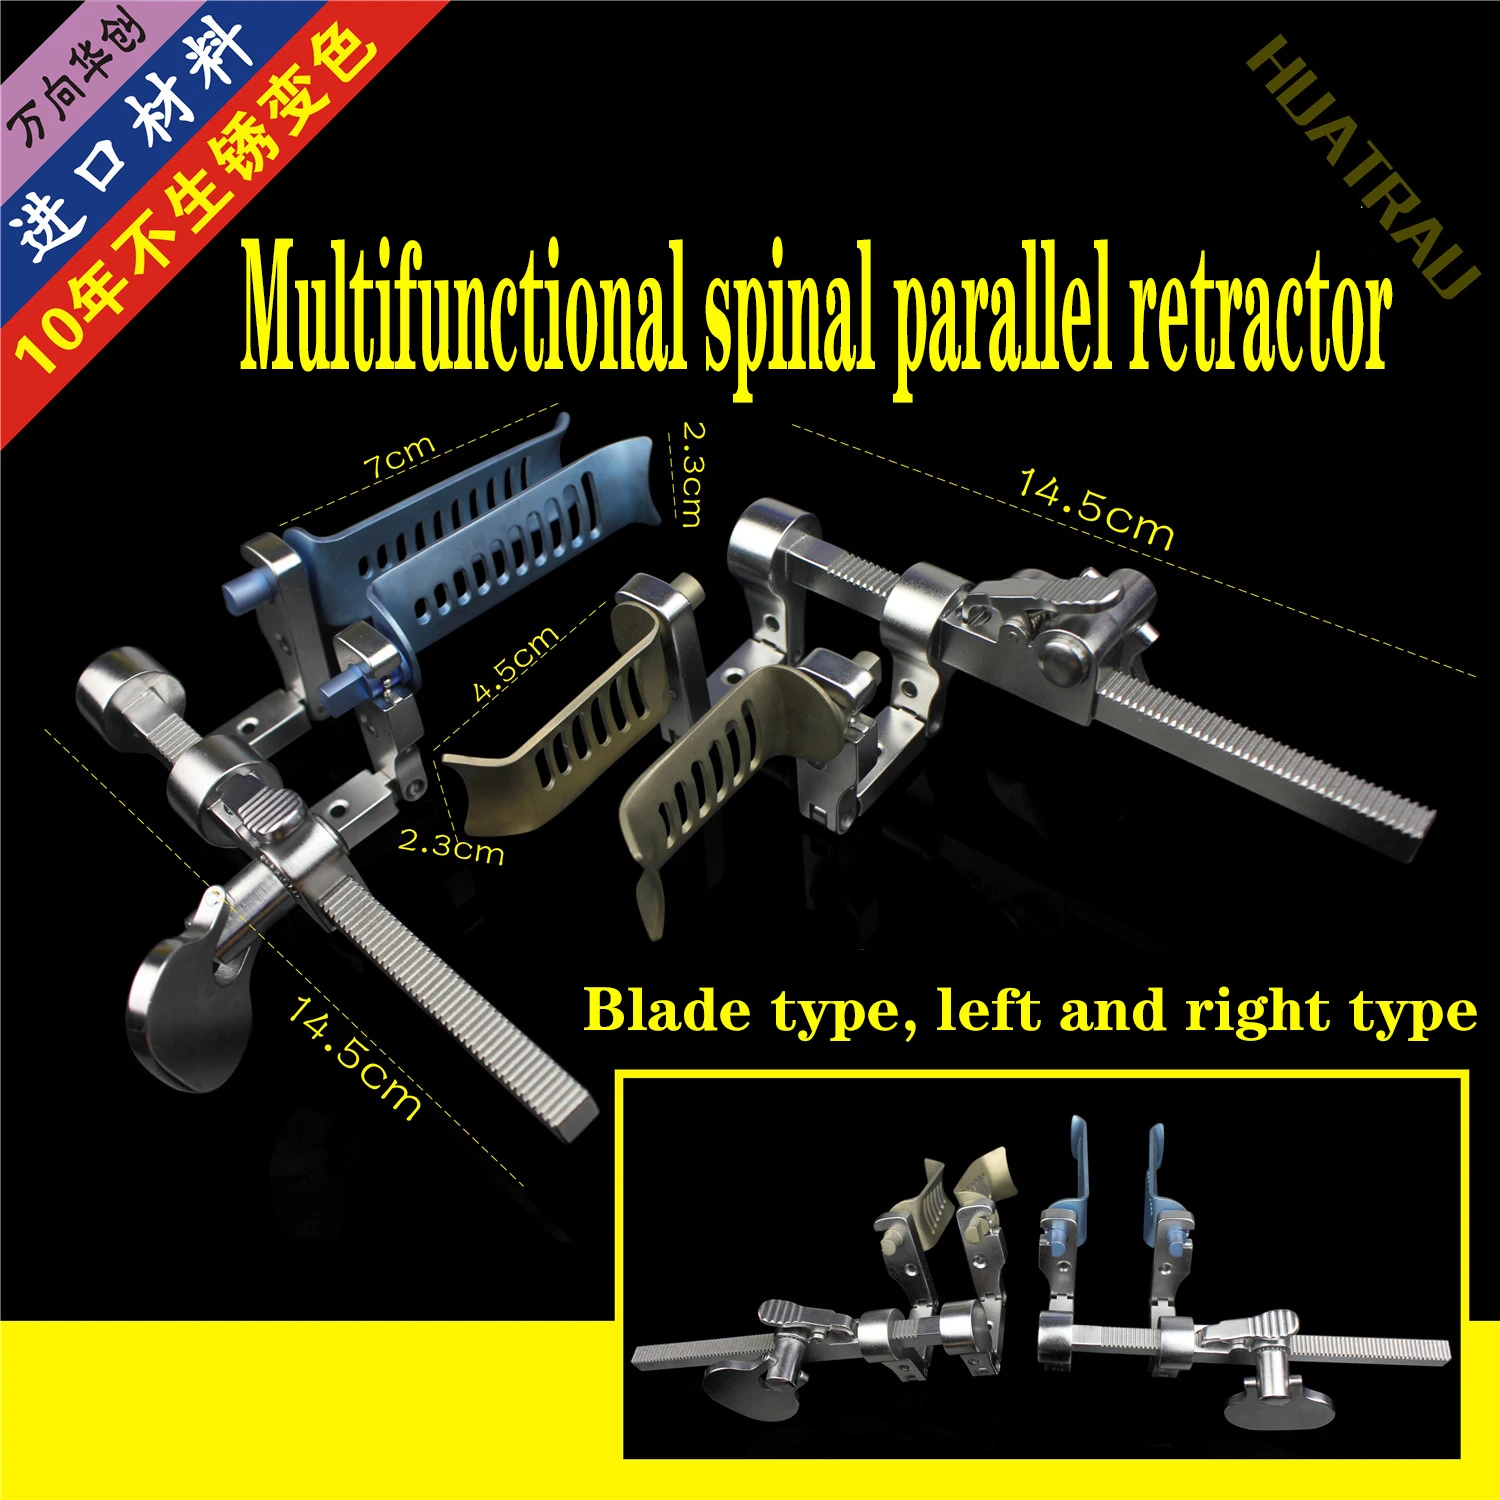 

Ортопедические инструменты, медицинский параллельный подвижный Ретрактор для позвоночника, шейного и поясничного отдела позвоночника, передвижной Пинцет AO